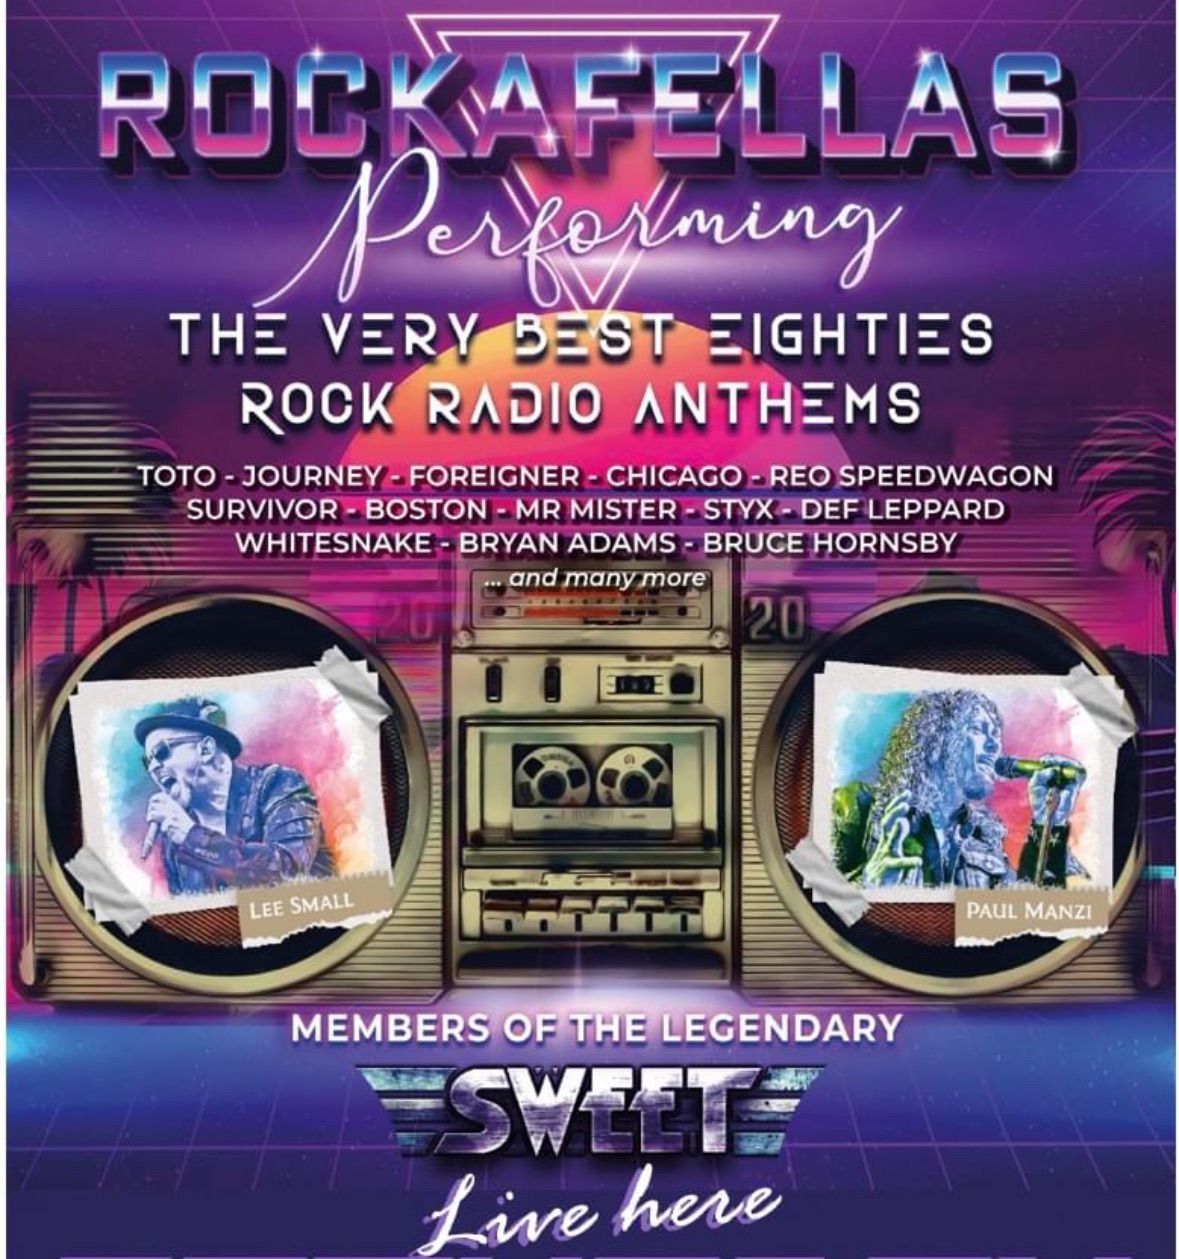 Rockafellas - featuring members of the SWEET!